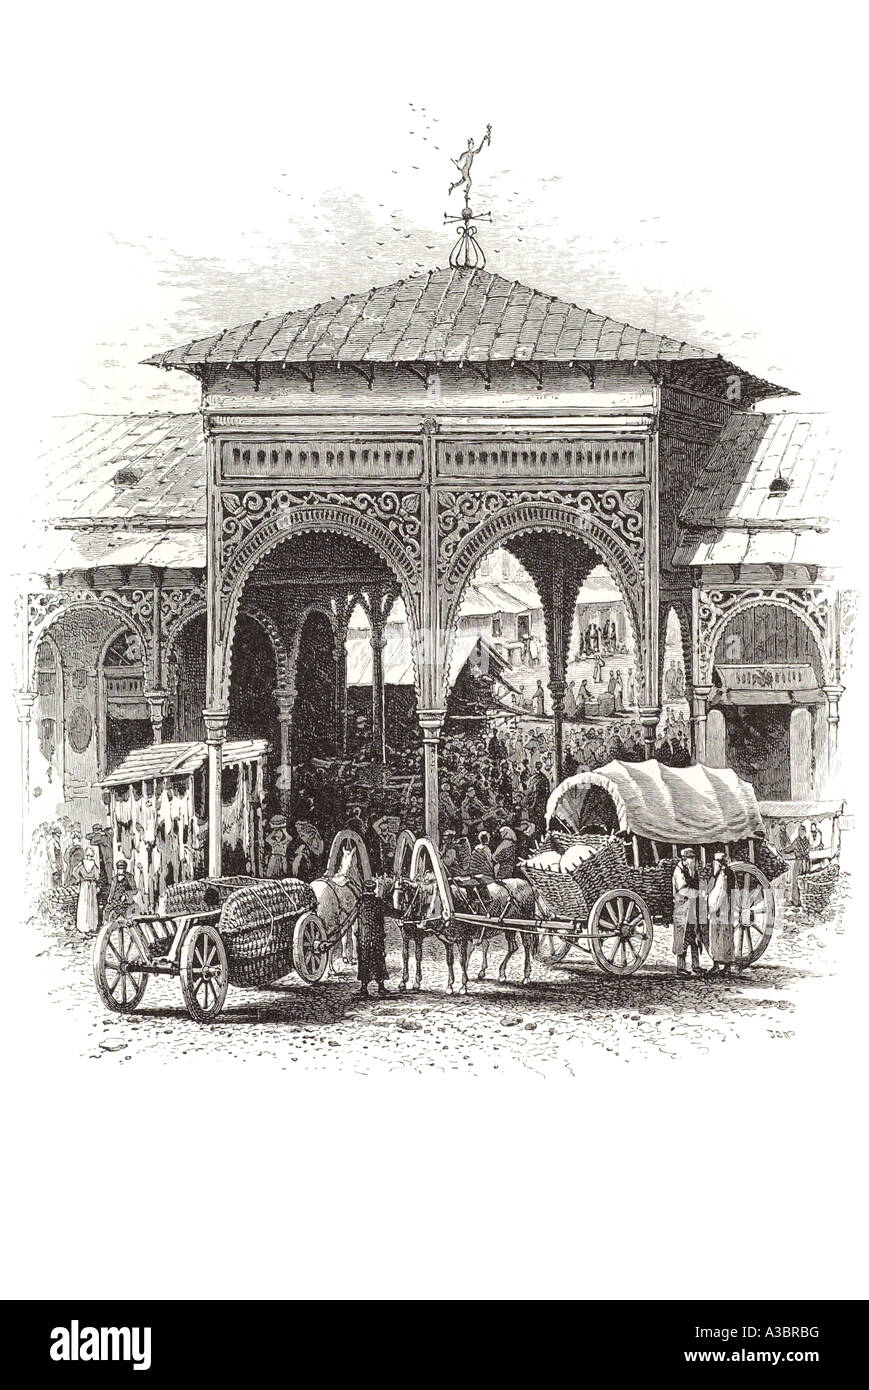 Le commerce juif juif bazar horse cart wagon Pologne Europe gateway arch ornée de bois carré d'entrée en bois polski Warszawa Banque D'Images